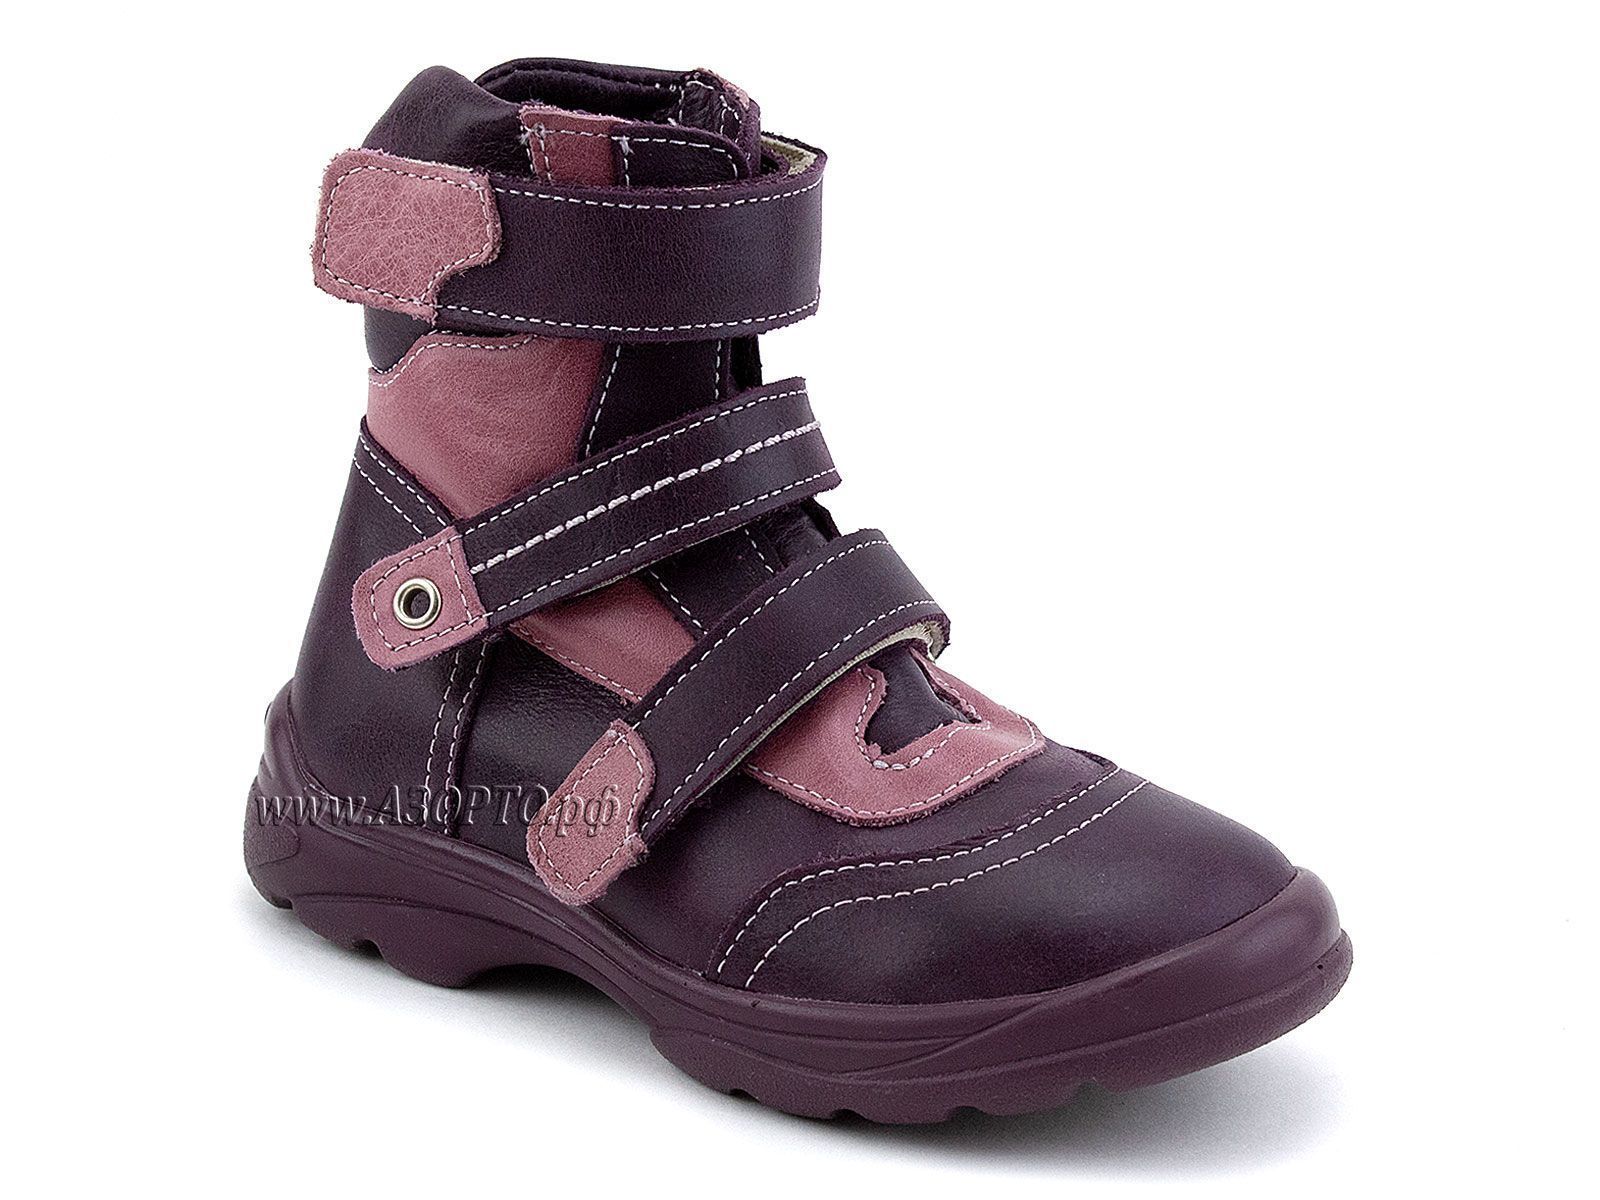 210-056,021,З Тотто (Totto), ботинки детские зимние ортопедические профилактические, мех, кожа, сиреневый.